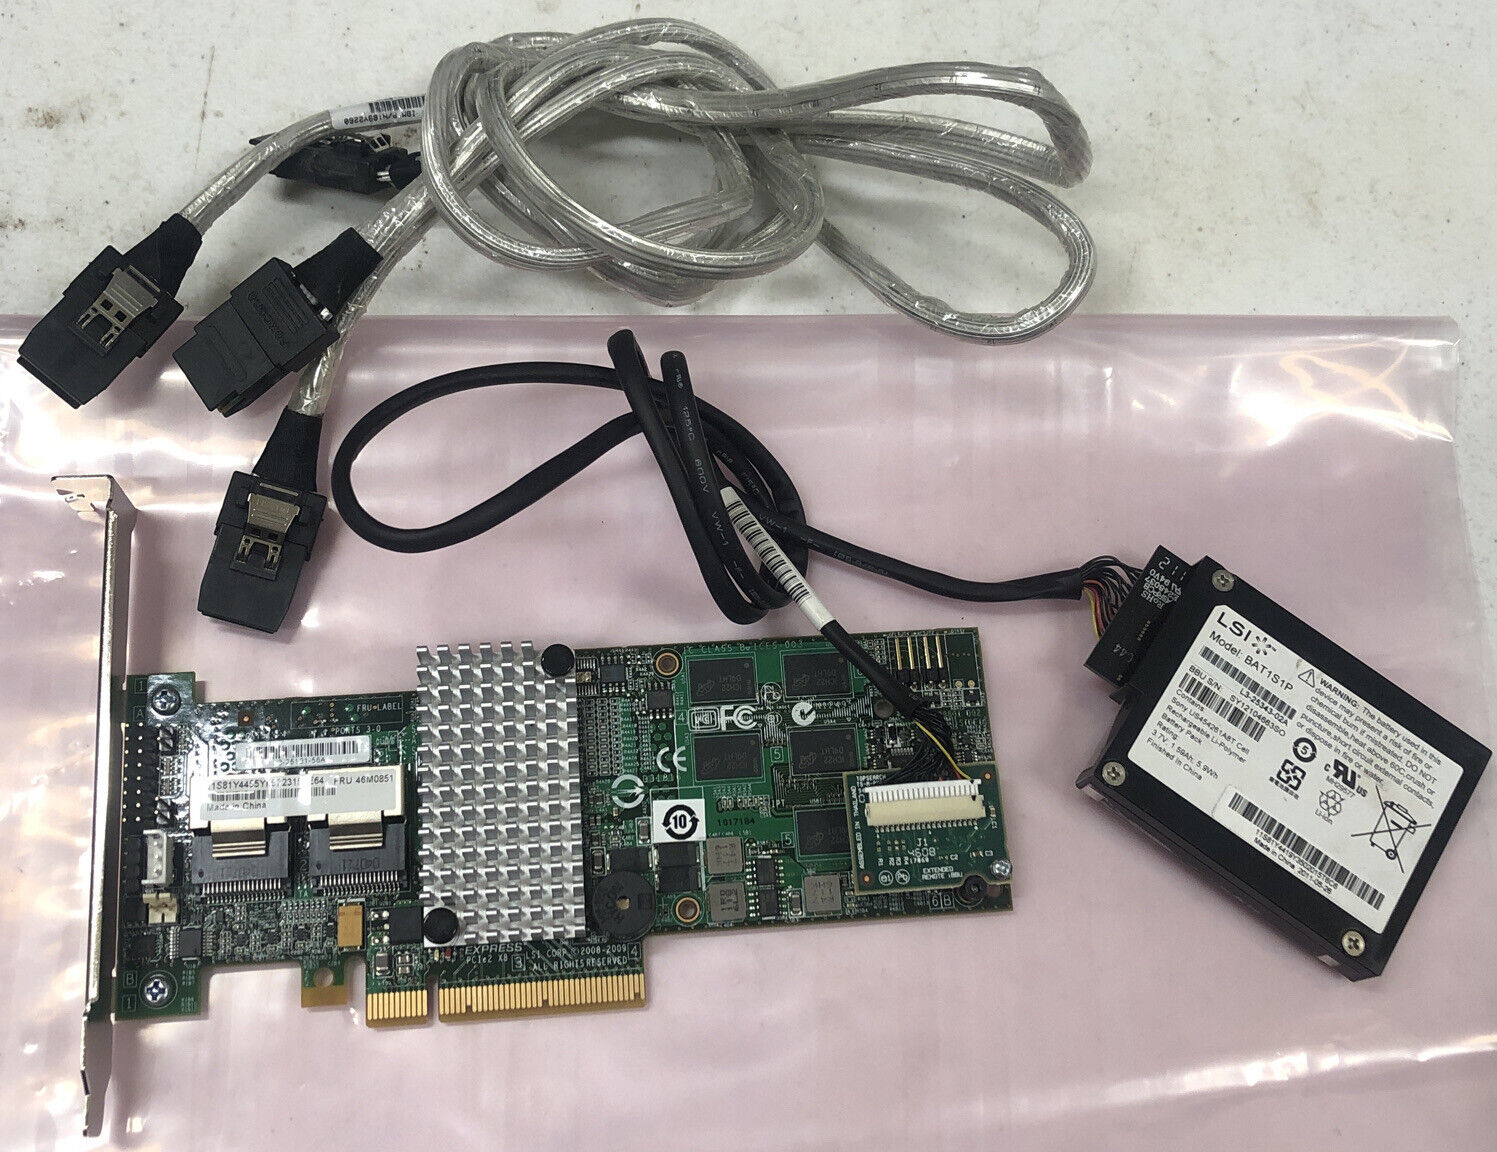 IBM 46M0851 SERVERAID M5015 6GB/s SAS RAID Controller Card PCIe 512MB w/Battery